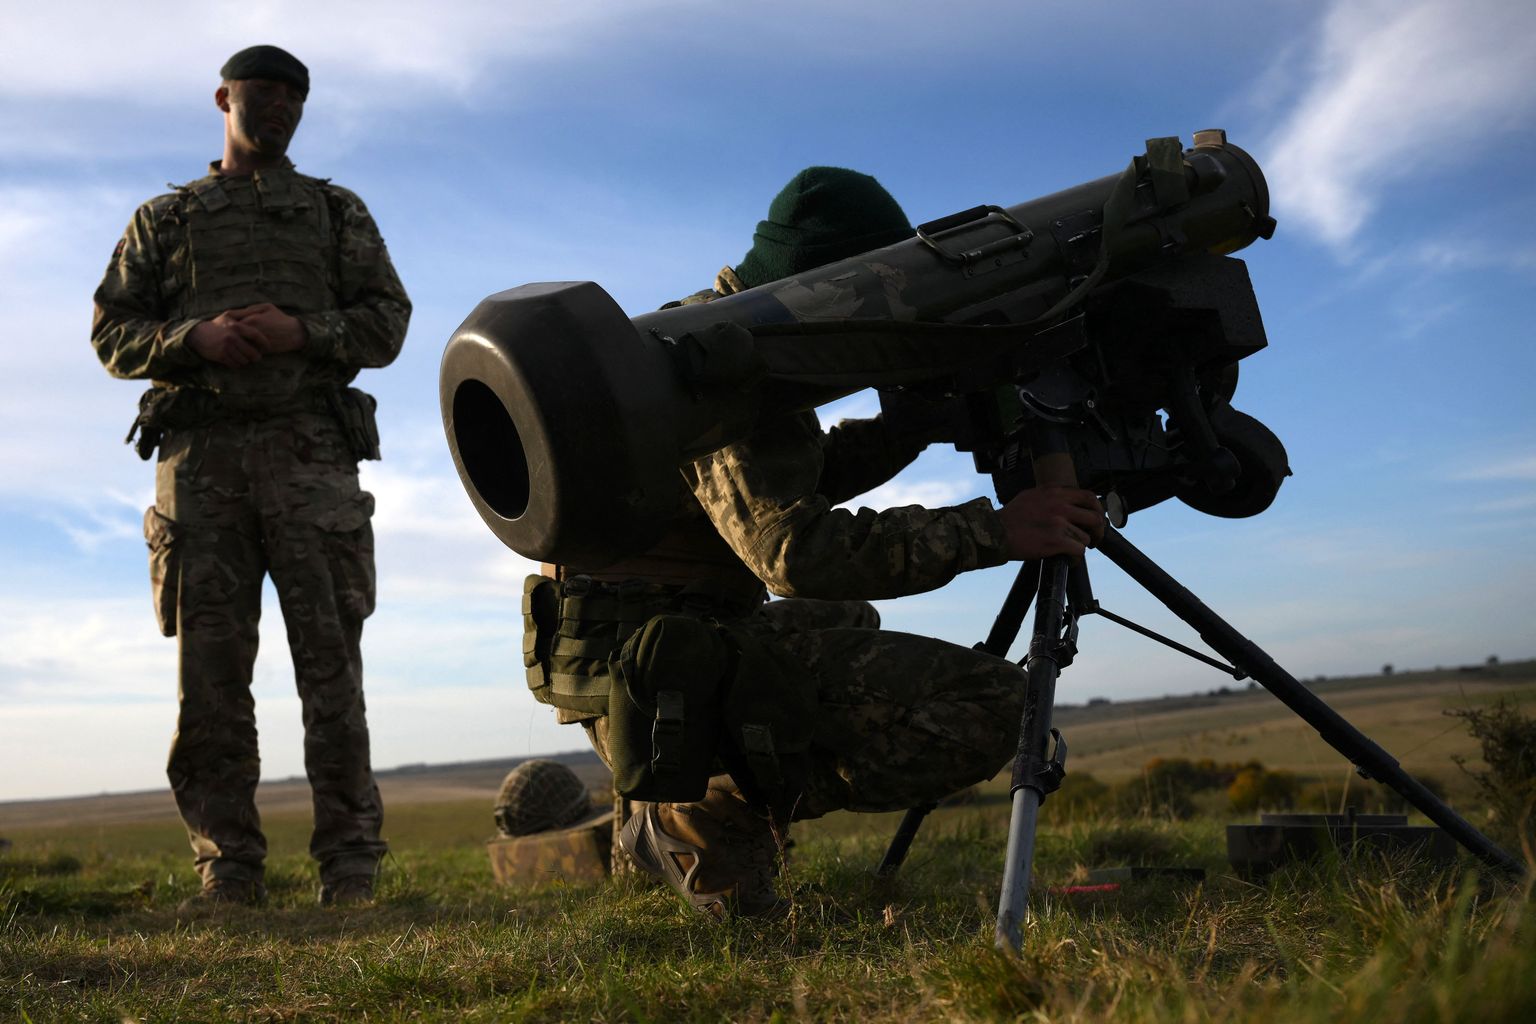 Pildil treenivad Ukraina sõdurid Ühendkuningriigis Javelini kasutamist. Uue põlvkonna relvast oleks abi nii maapealsete sihtmärkide kui ka õhus lendavate droonide ja tiibrakettide hävitamisel.